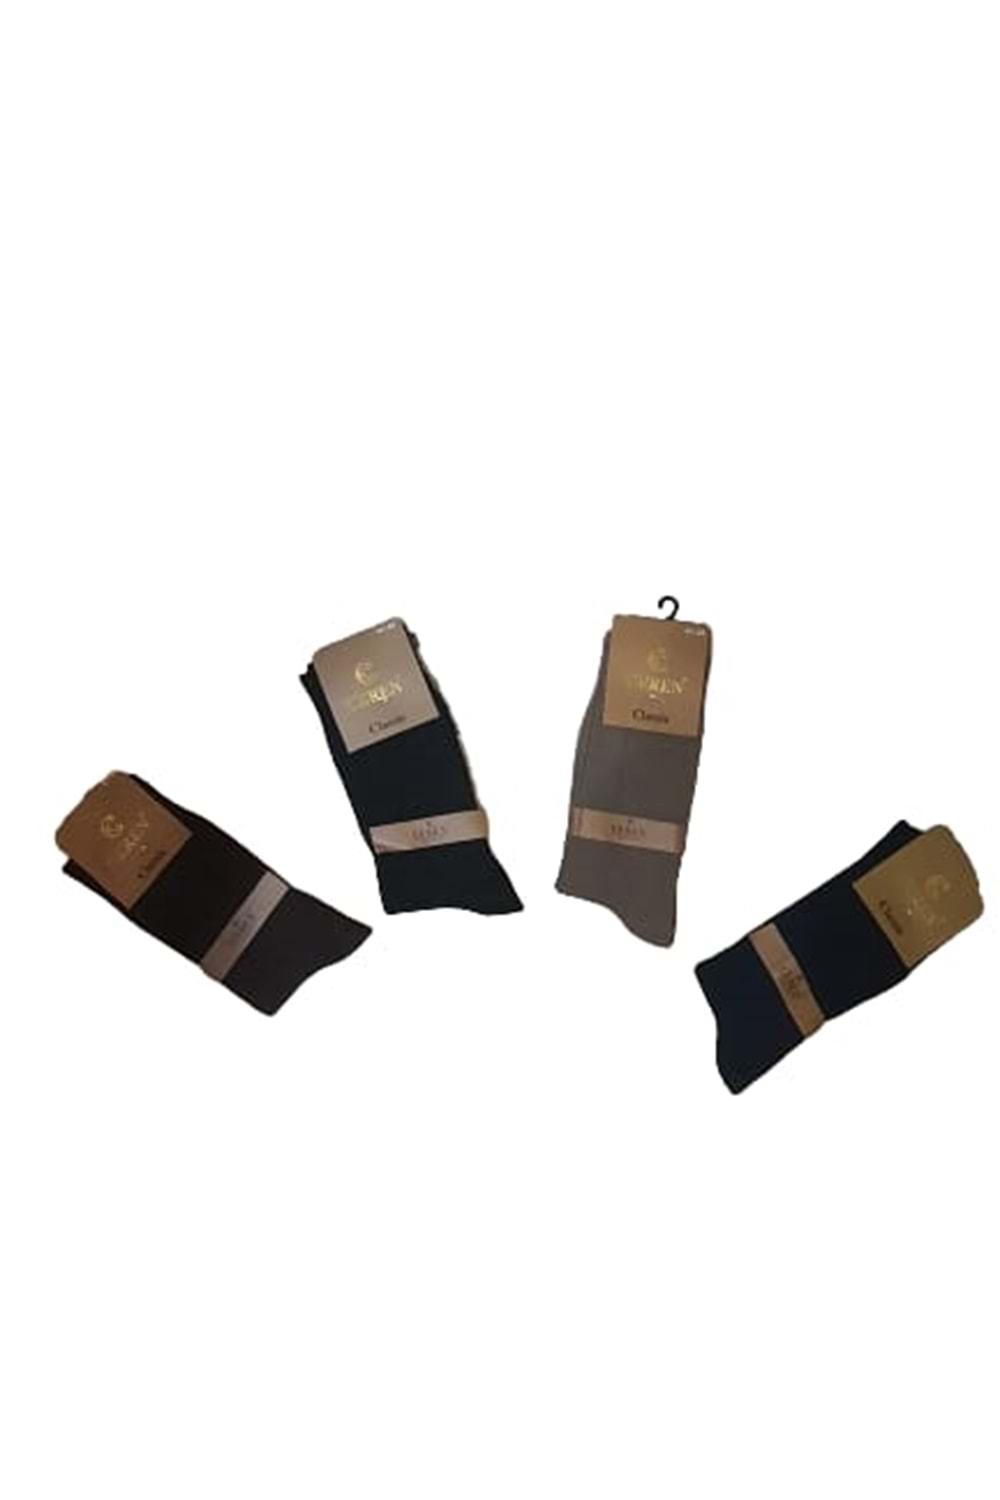 Ceren Erkek Bambu Classic Çorap (4 Adet) C 00275 - Karışık Renkli - 41-44